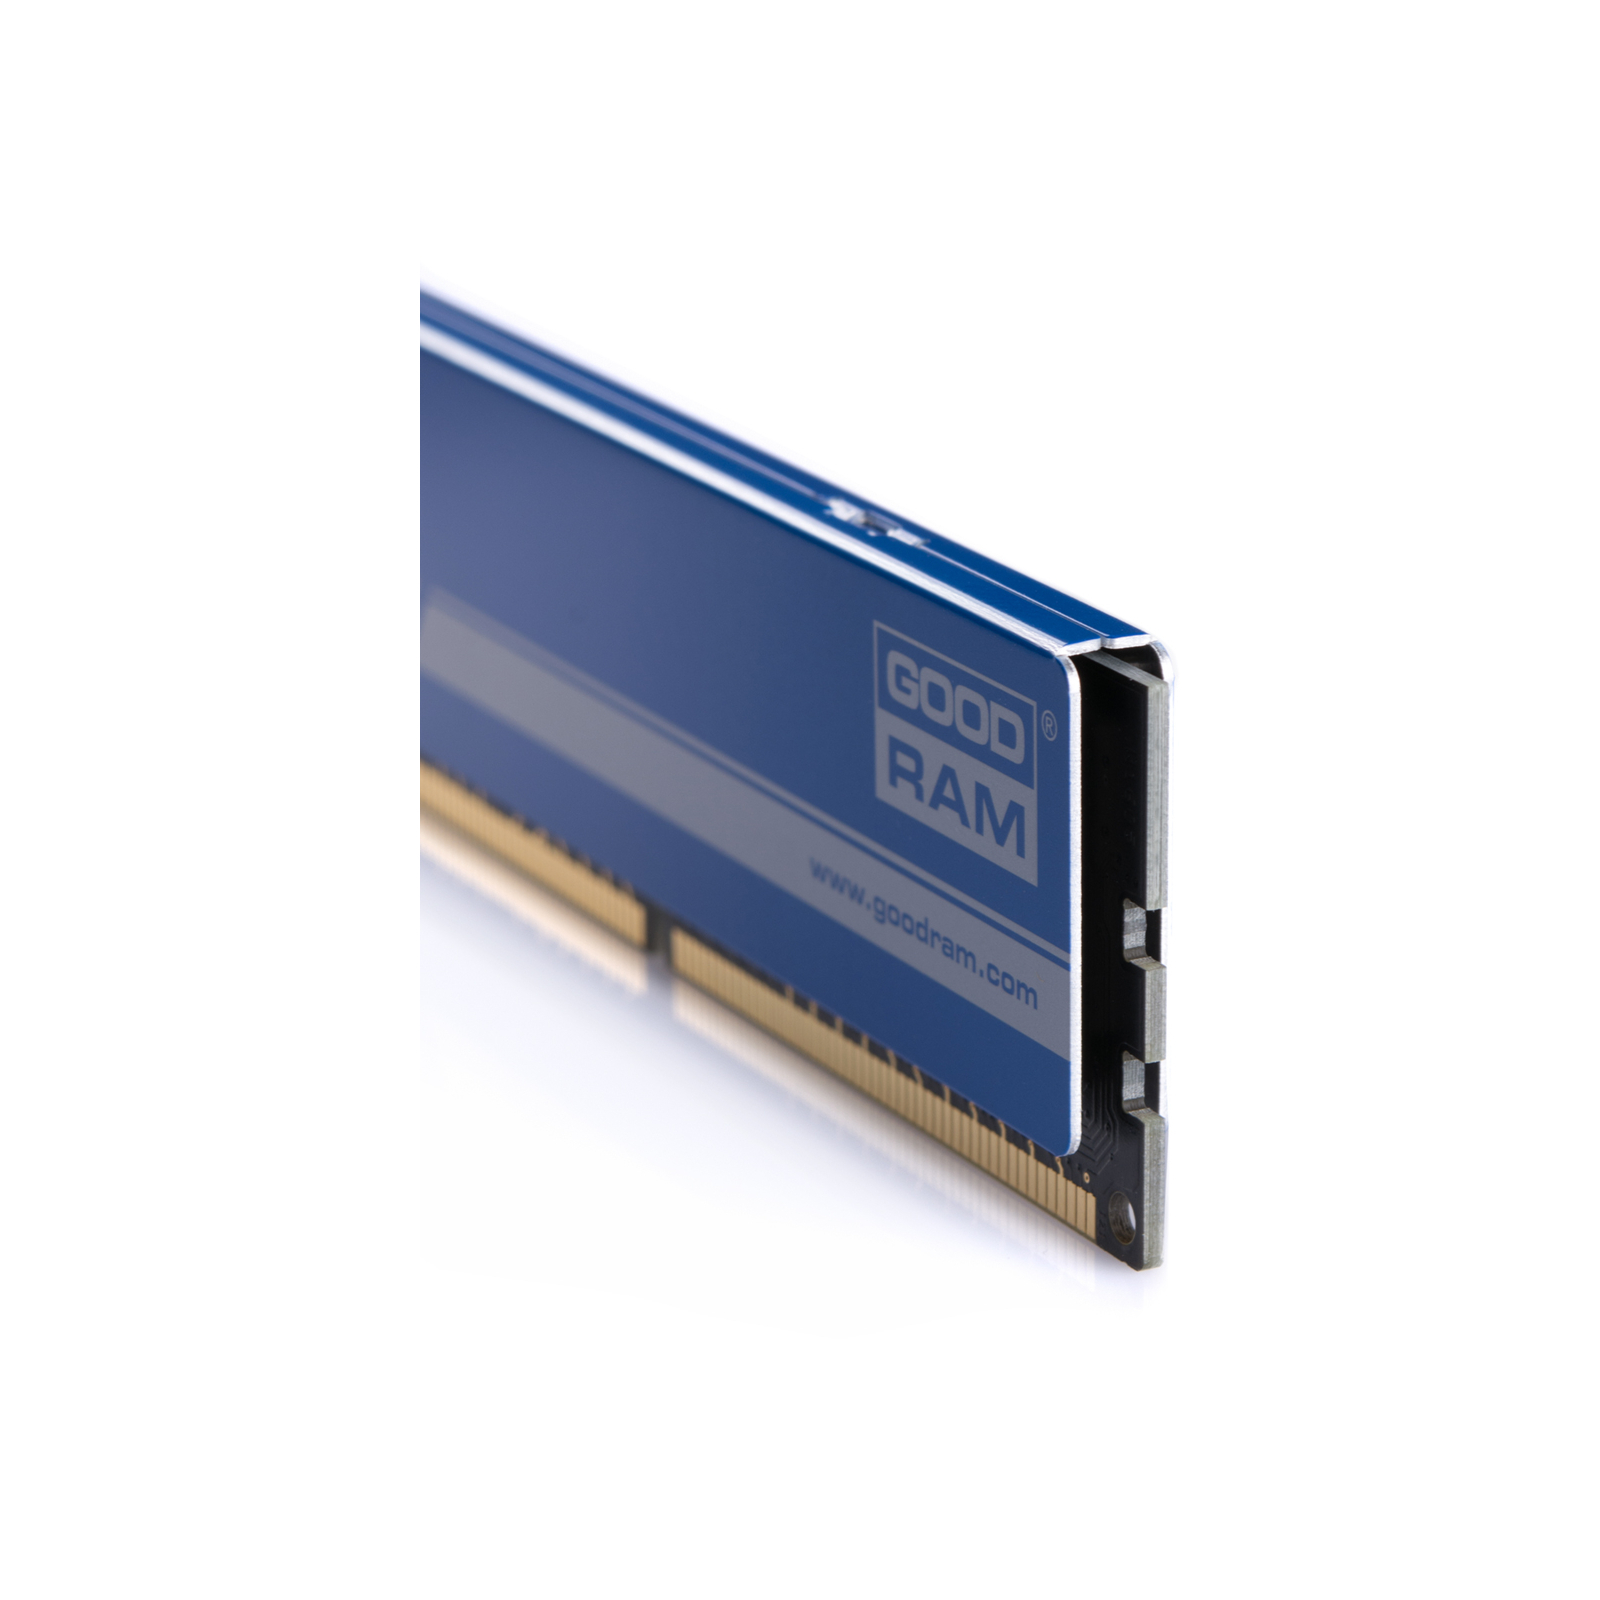 Модуль памяти для компьютера DDR3 4GB 1866 MHz Goodram (GYB1866D364L9A/4G / GYB1866D364L9AS/4G) изображение 4